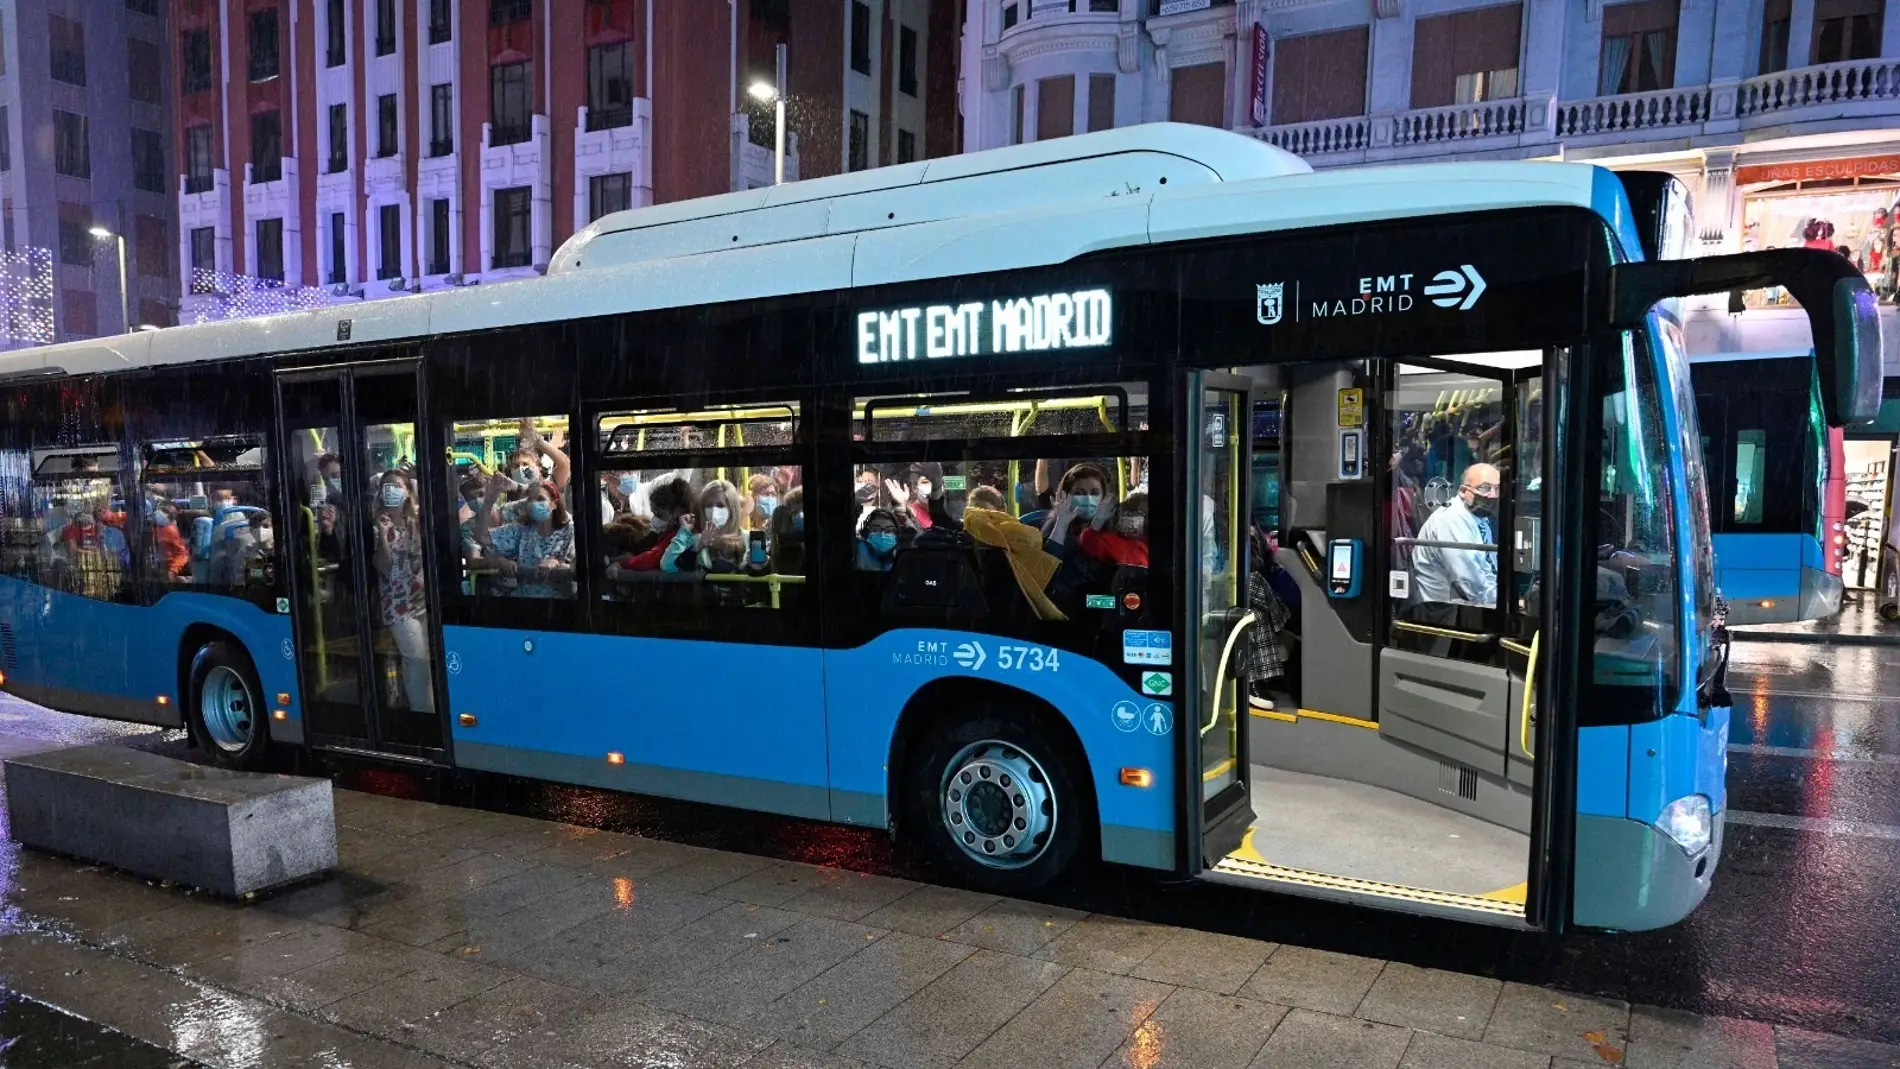 Autobuses EMT gratis en Madrid: cuándo, días y horarios